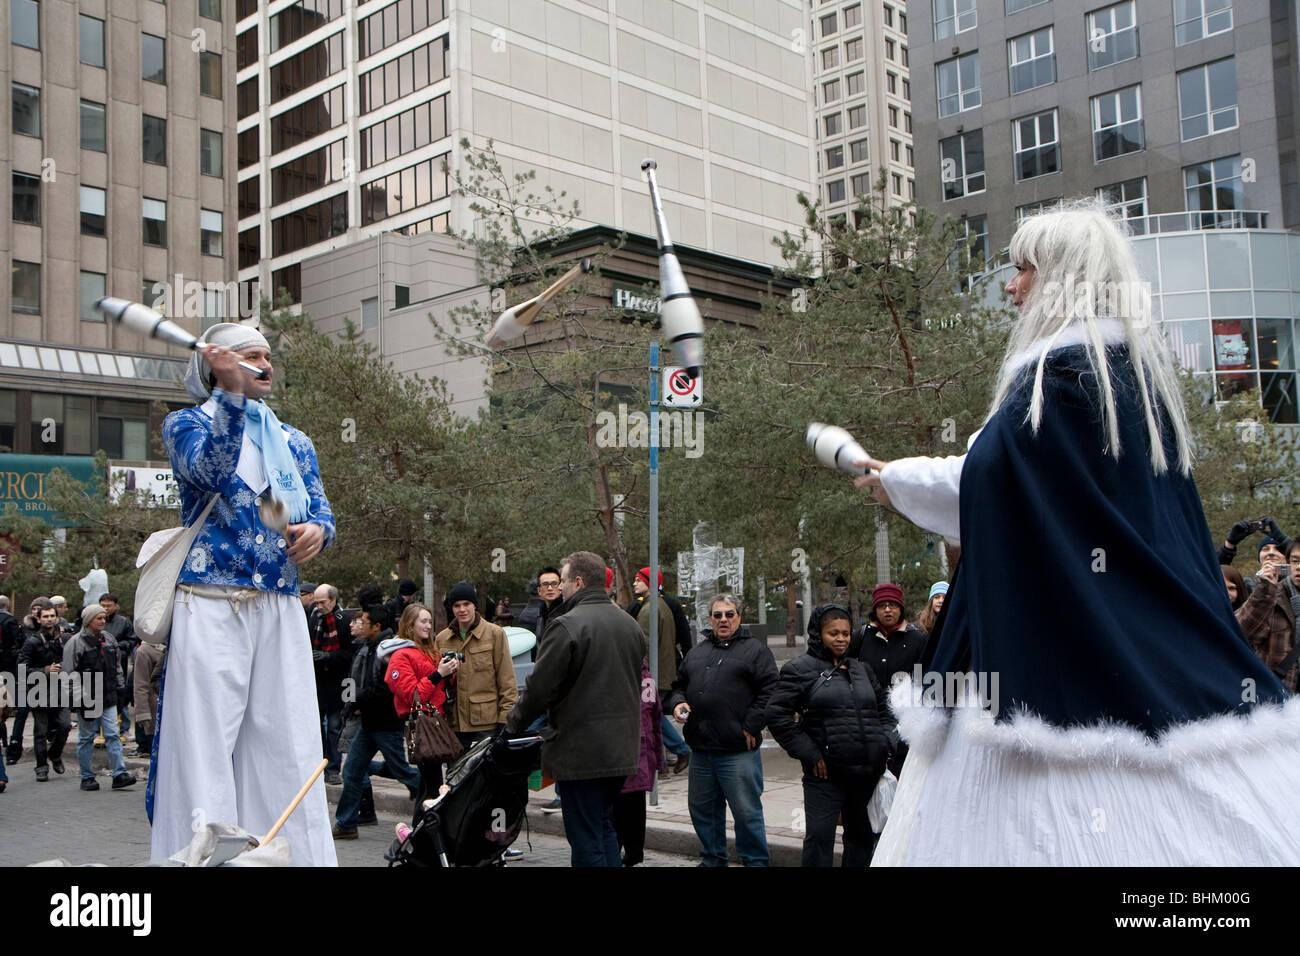 Jongleur jongleurs effectuant une foule d'hiver Banque D'Images